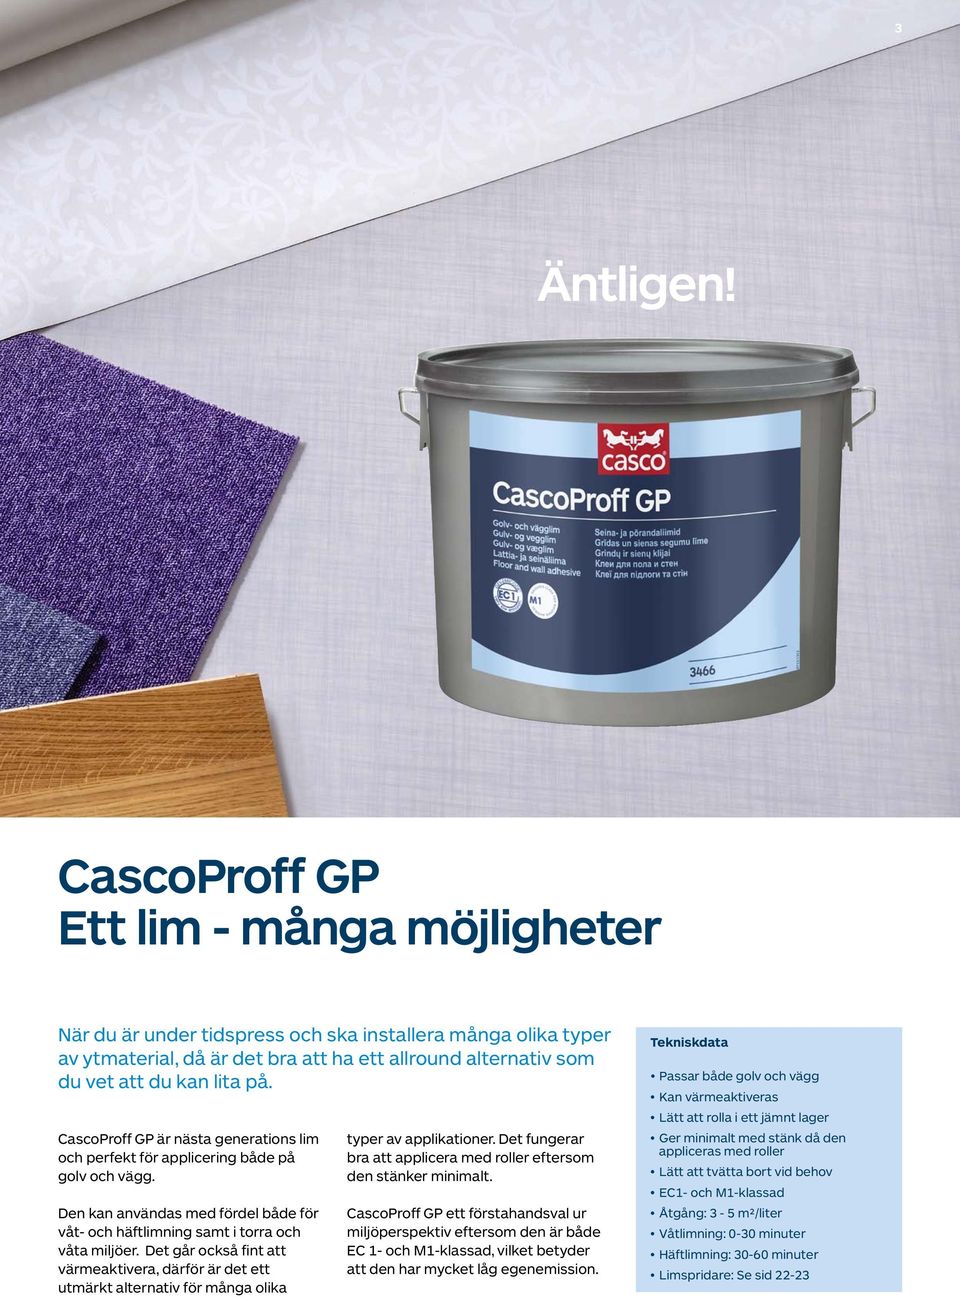 CascoProff GP är nästa generations lim och perfekt för applicering både på golv och vägg. Den kan användas med fördel både för våt- och häftlimning samt i torra och våta miljöer.